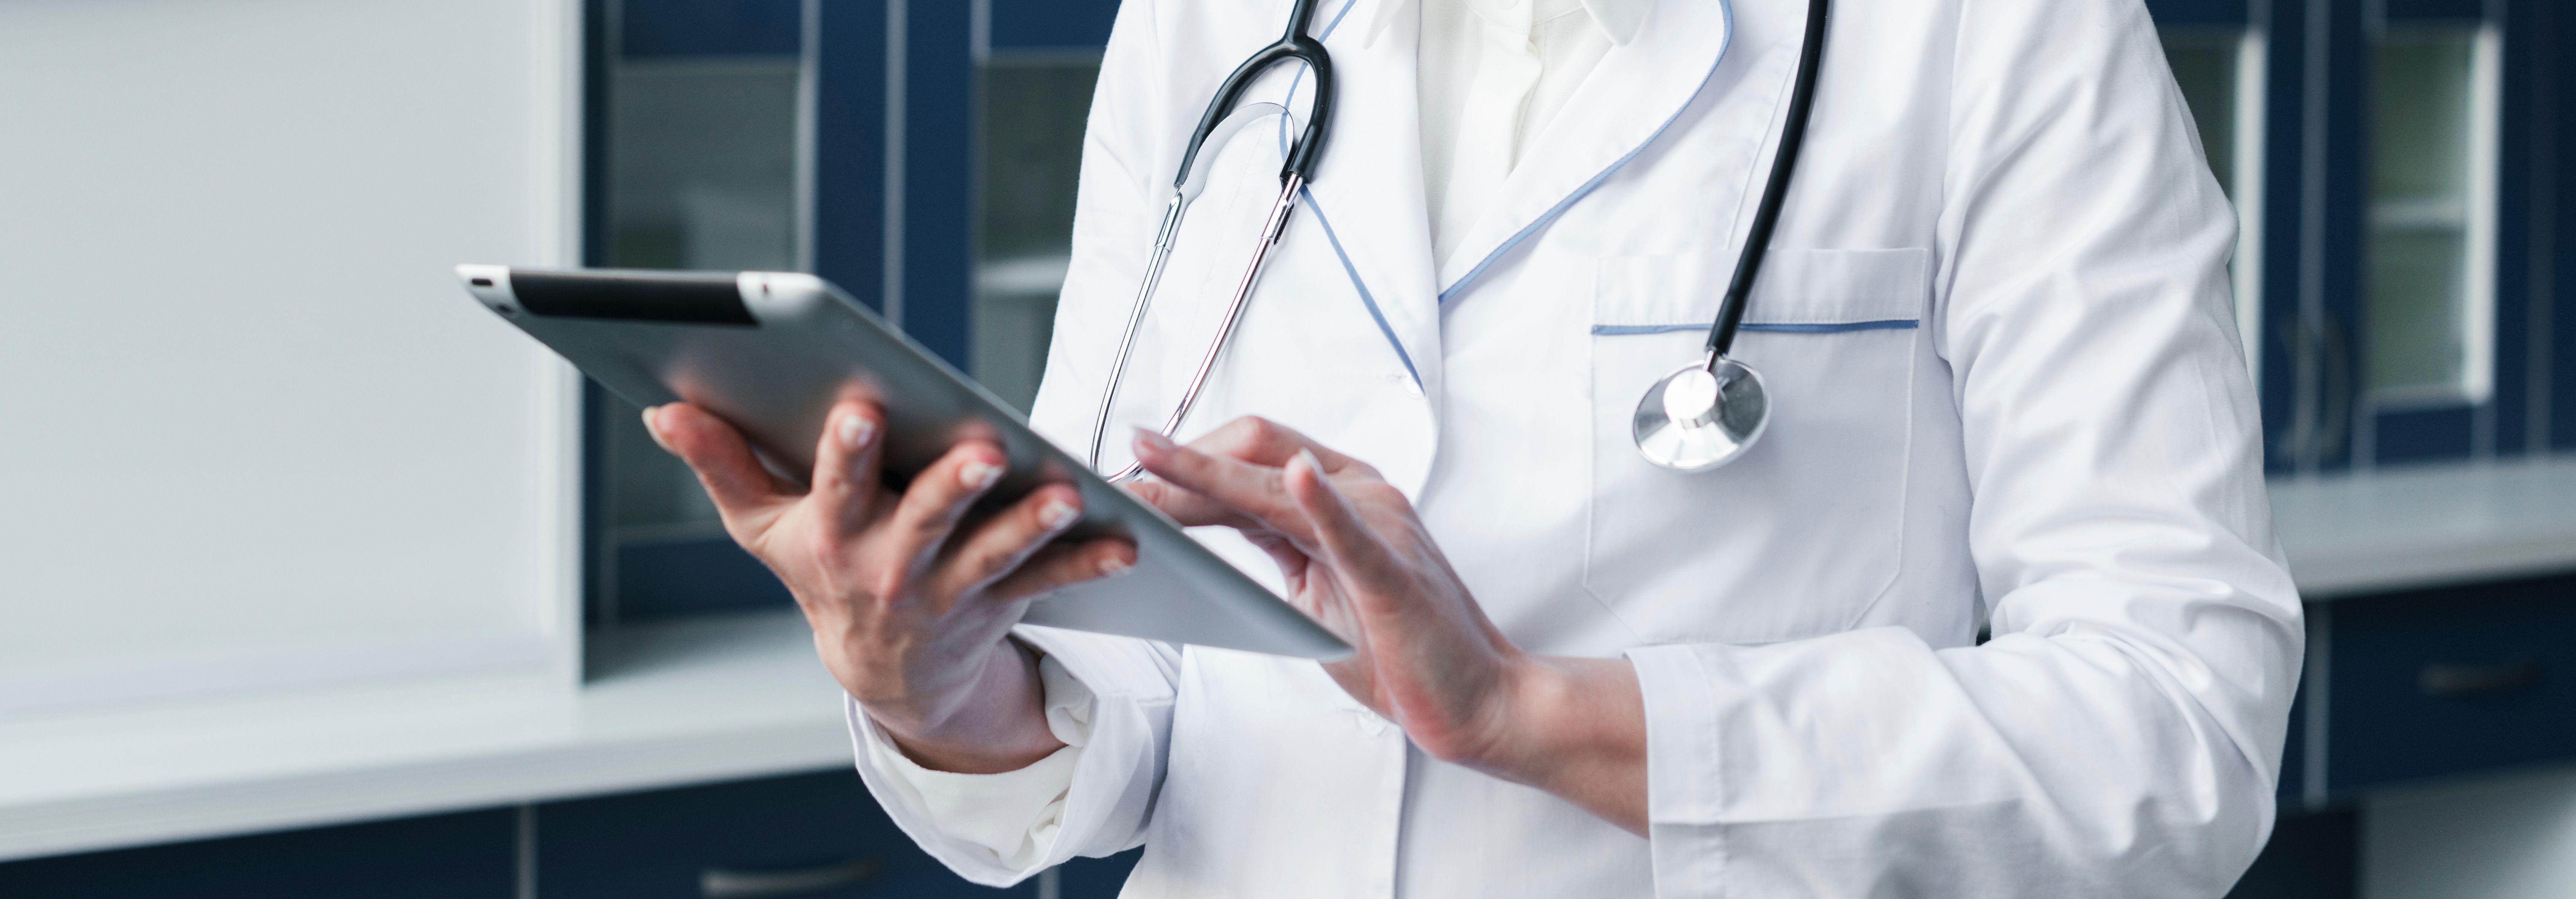 médico utiliza tablet para visualizar o prontuário eletrônico do paciente